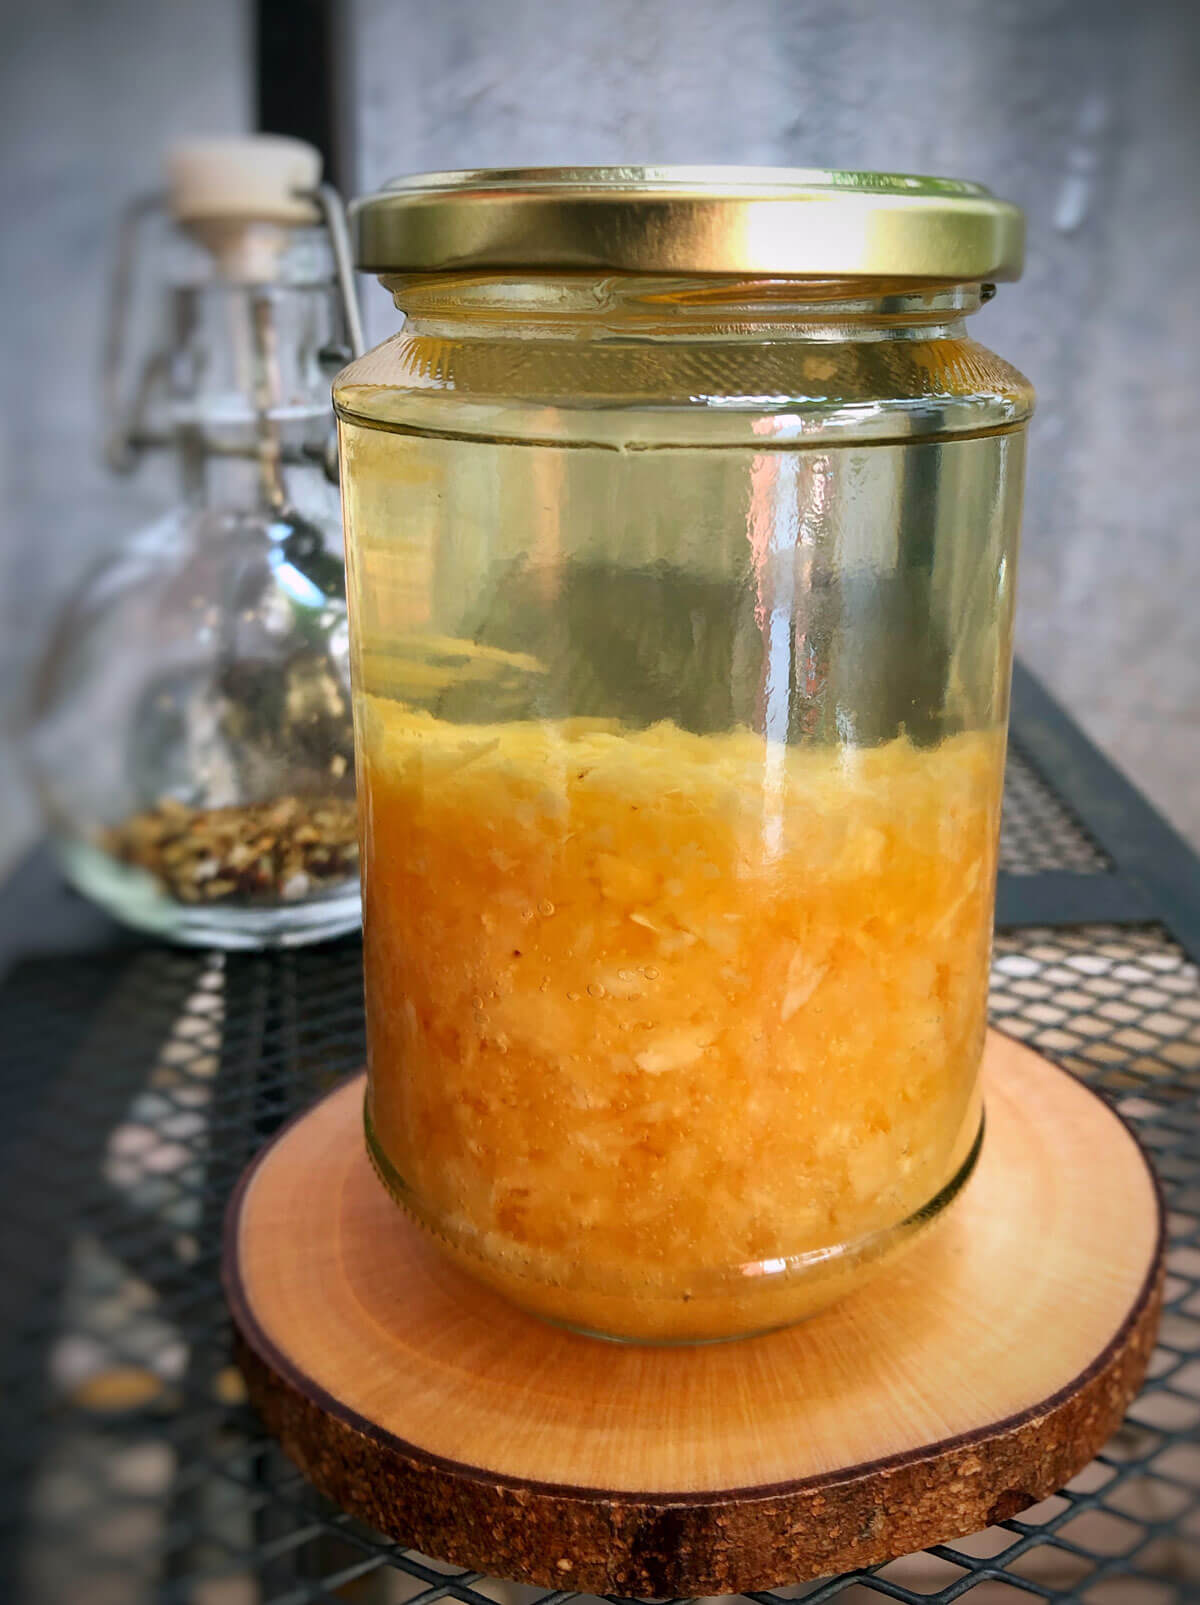 Baceman Bawang Putih: Indonesian Fermented Garlic Oil (Vegan)